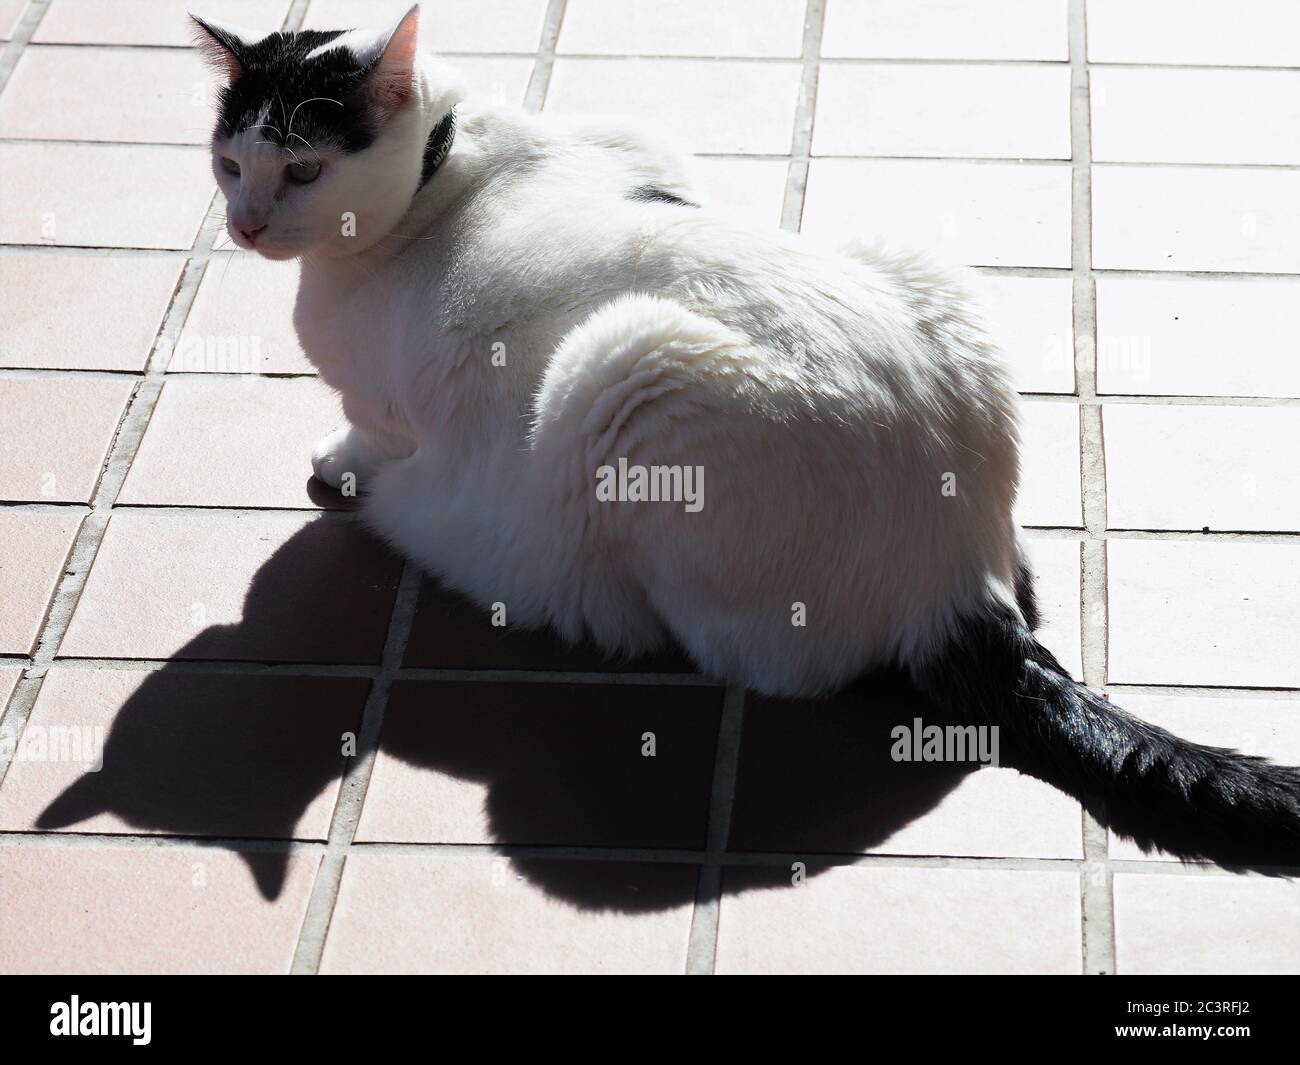 Un chat blanc espiègle avec des marques noires qui se posent au soleil et qui joue avec son ombre. Banque D'Images